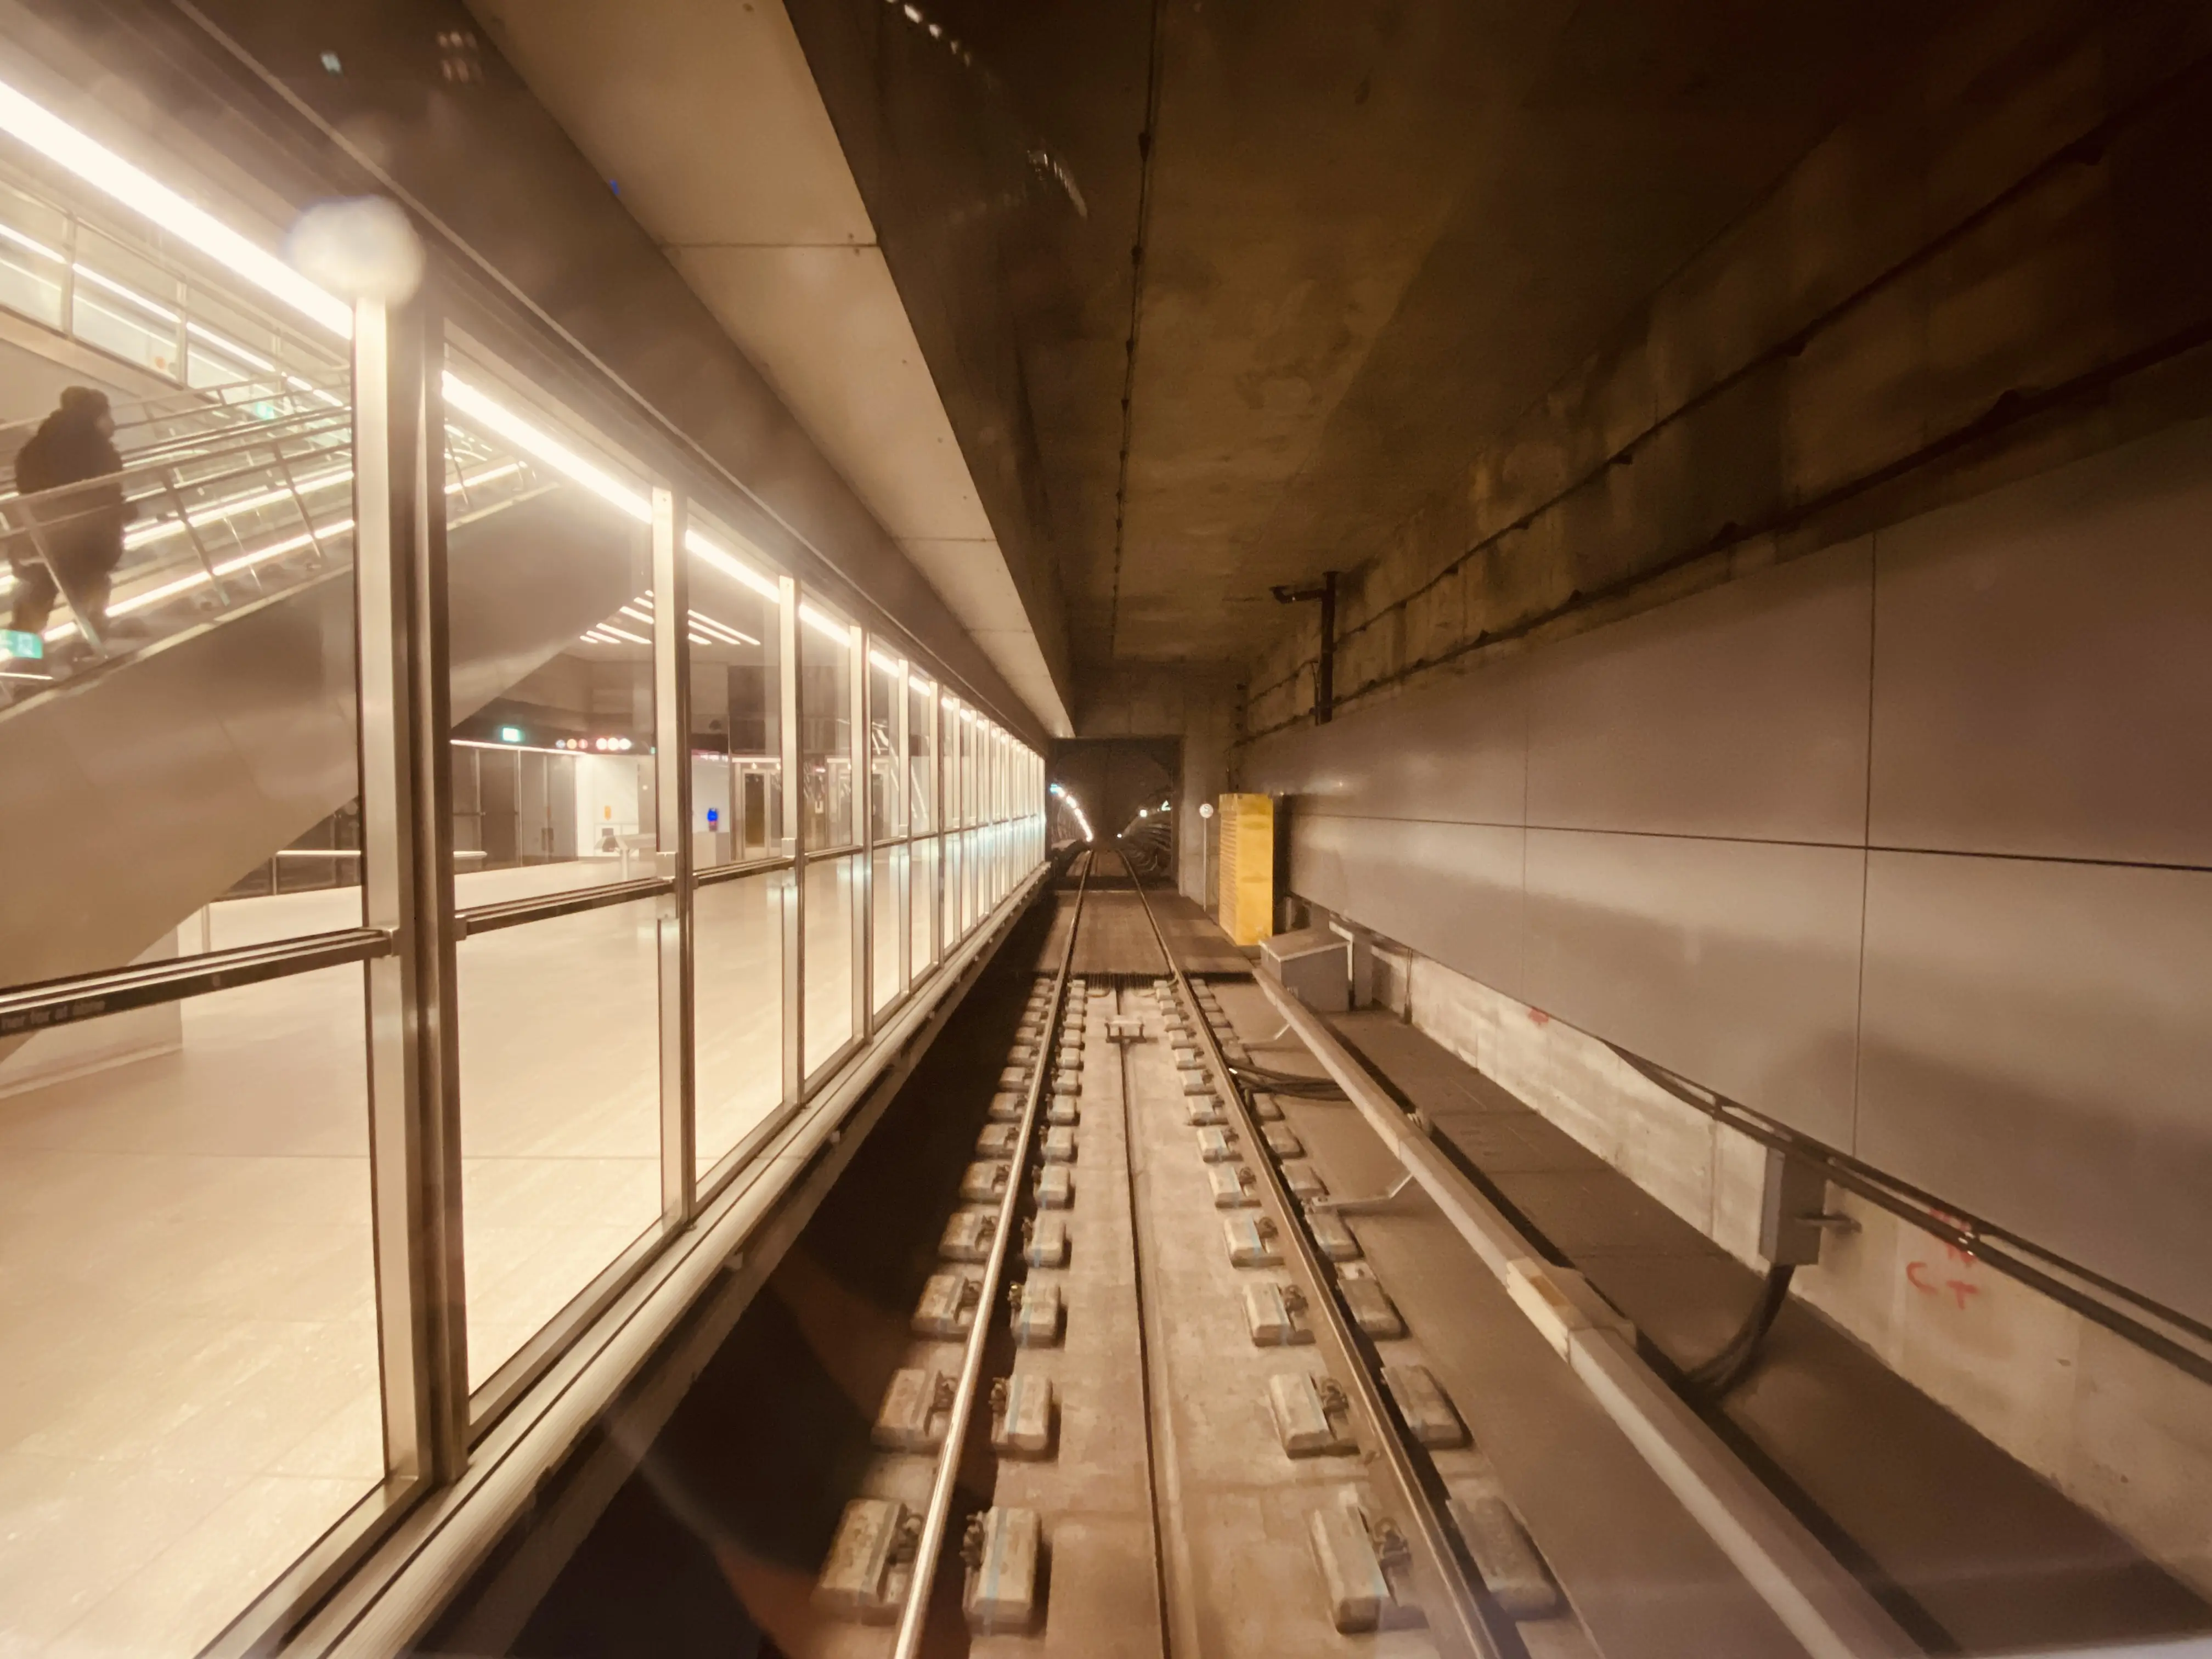 Billede af Gammel Strand Metrostation.